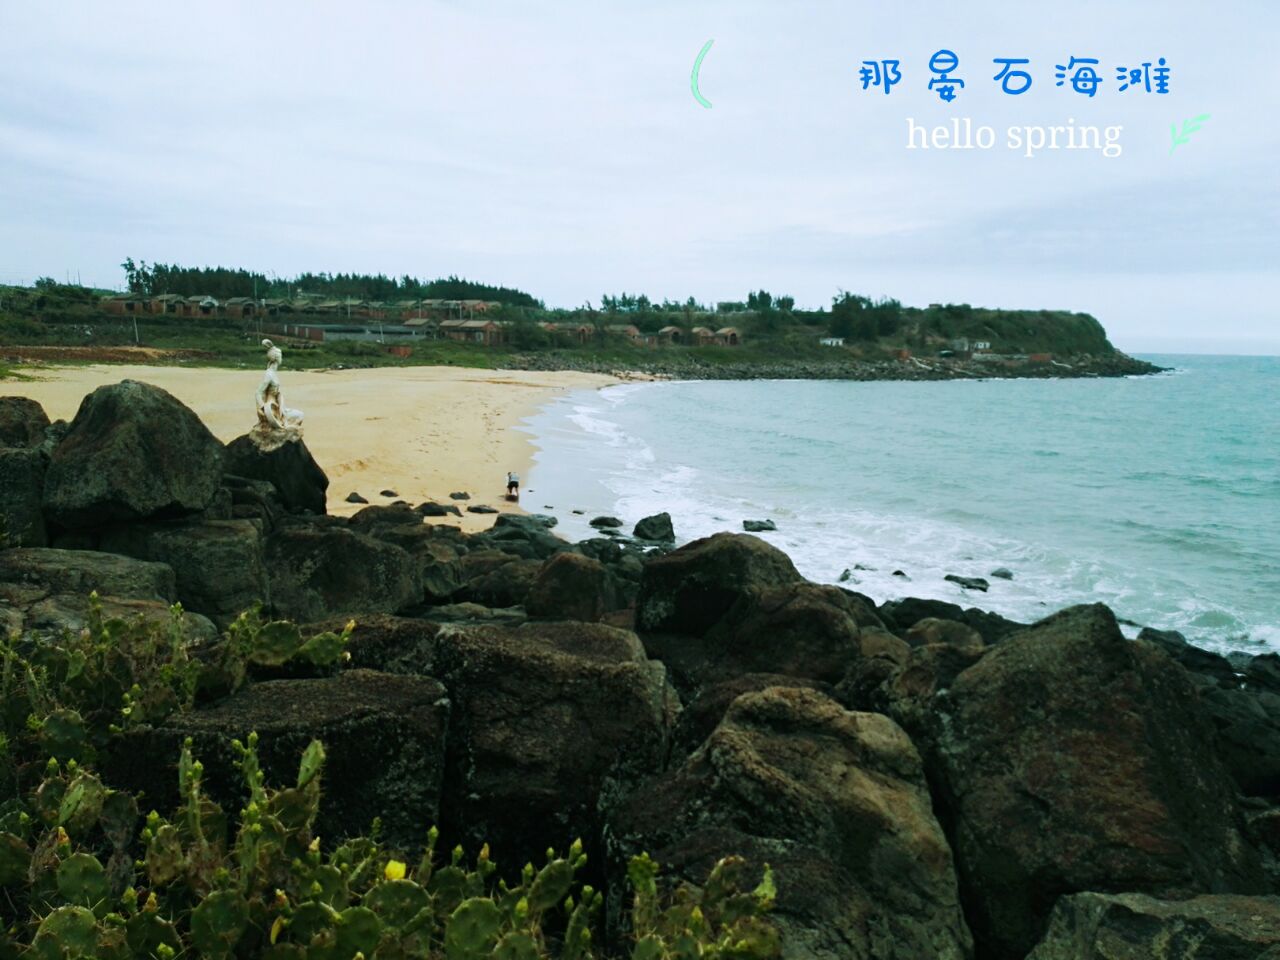 【携程攻略】湛江硇洲岛景点,11月底去算是淡季，岛上游客很少。中国最大火山岛，世界三大灯塔硇洲…